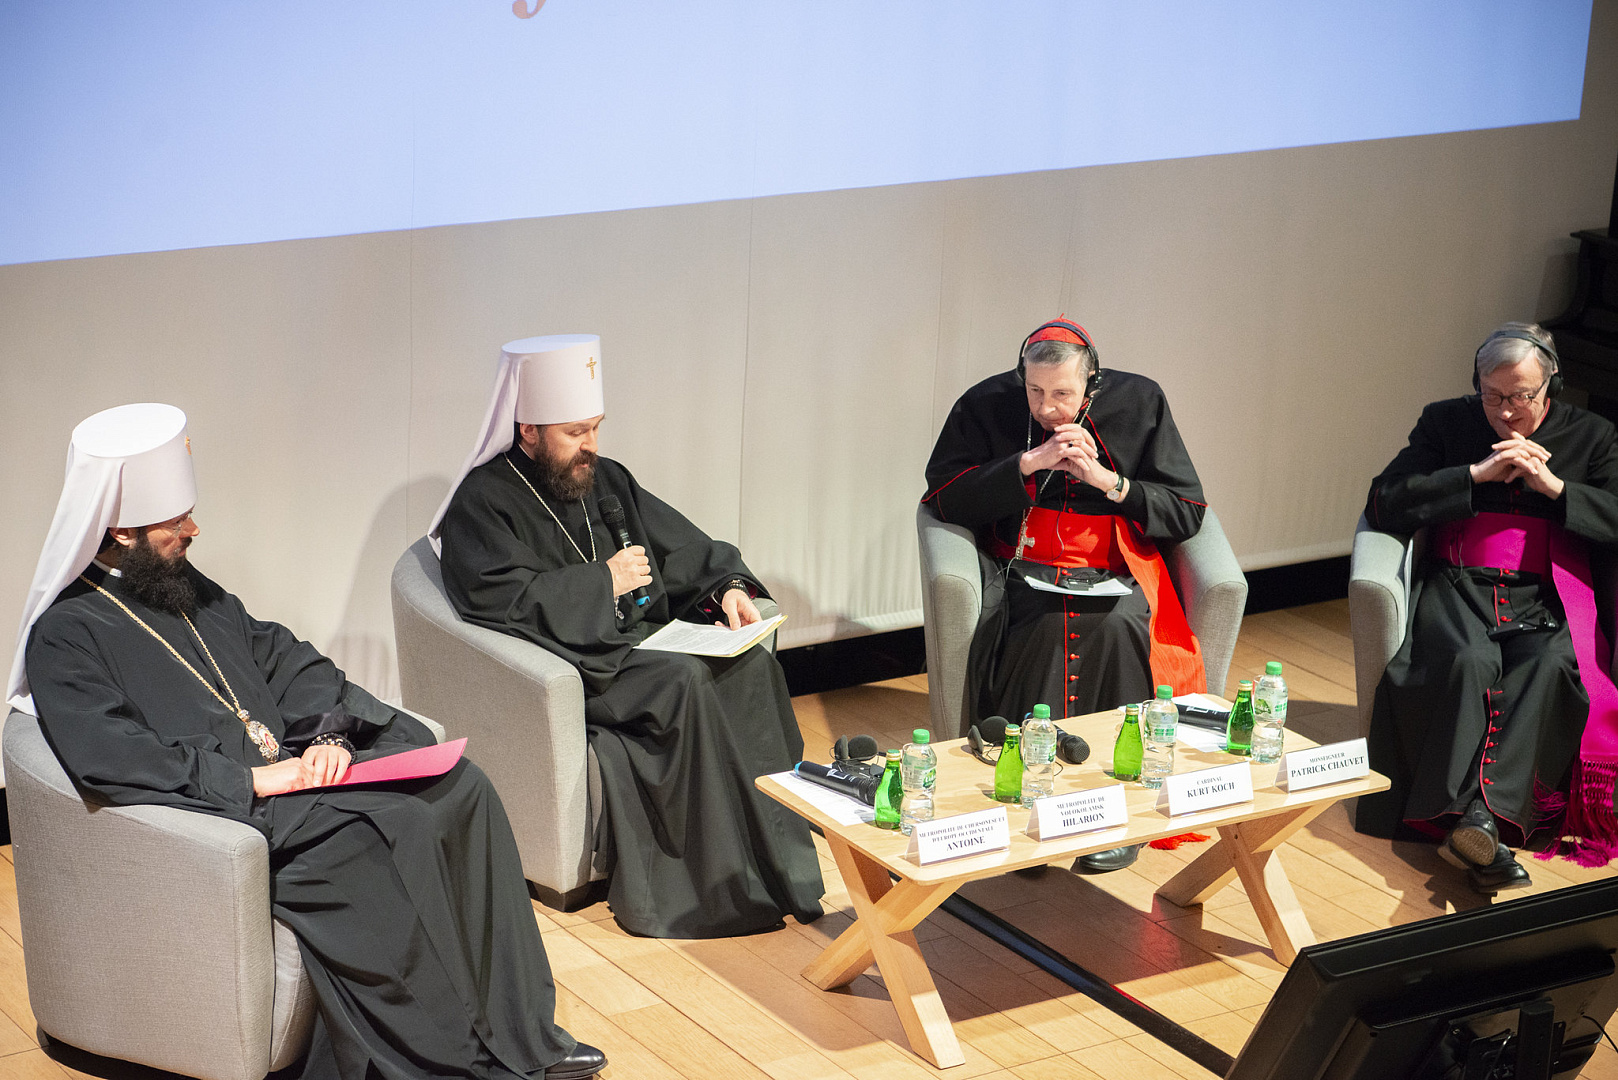 Перспективы развития паломничества обсудили на православно-католической конференции в Париже